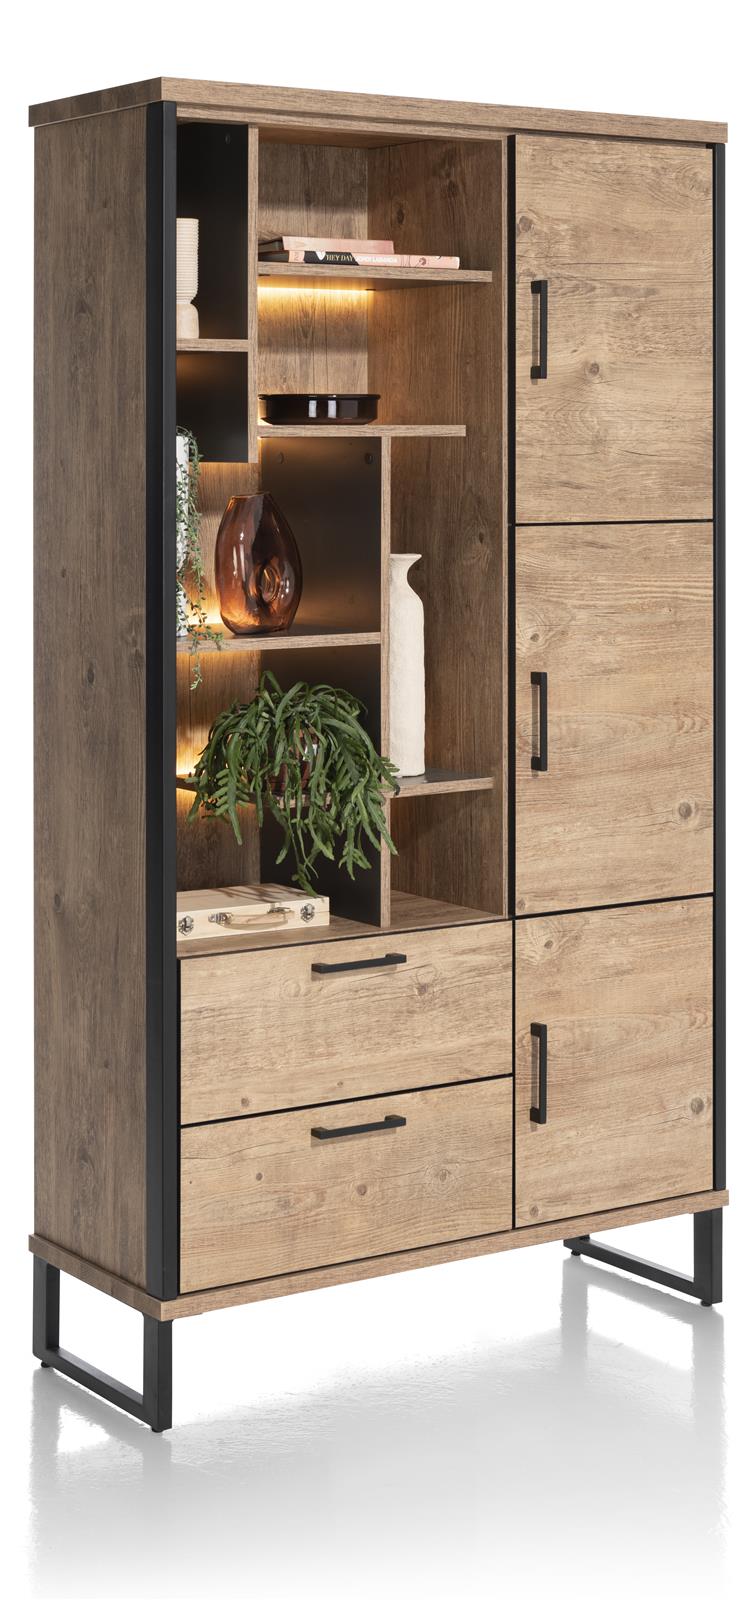 Habufa Pantin Rustic Tall Storage Display Cabinet-Display cabinets-Habufa-Against The Grain Furniture